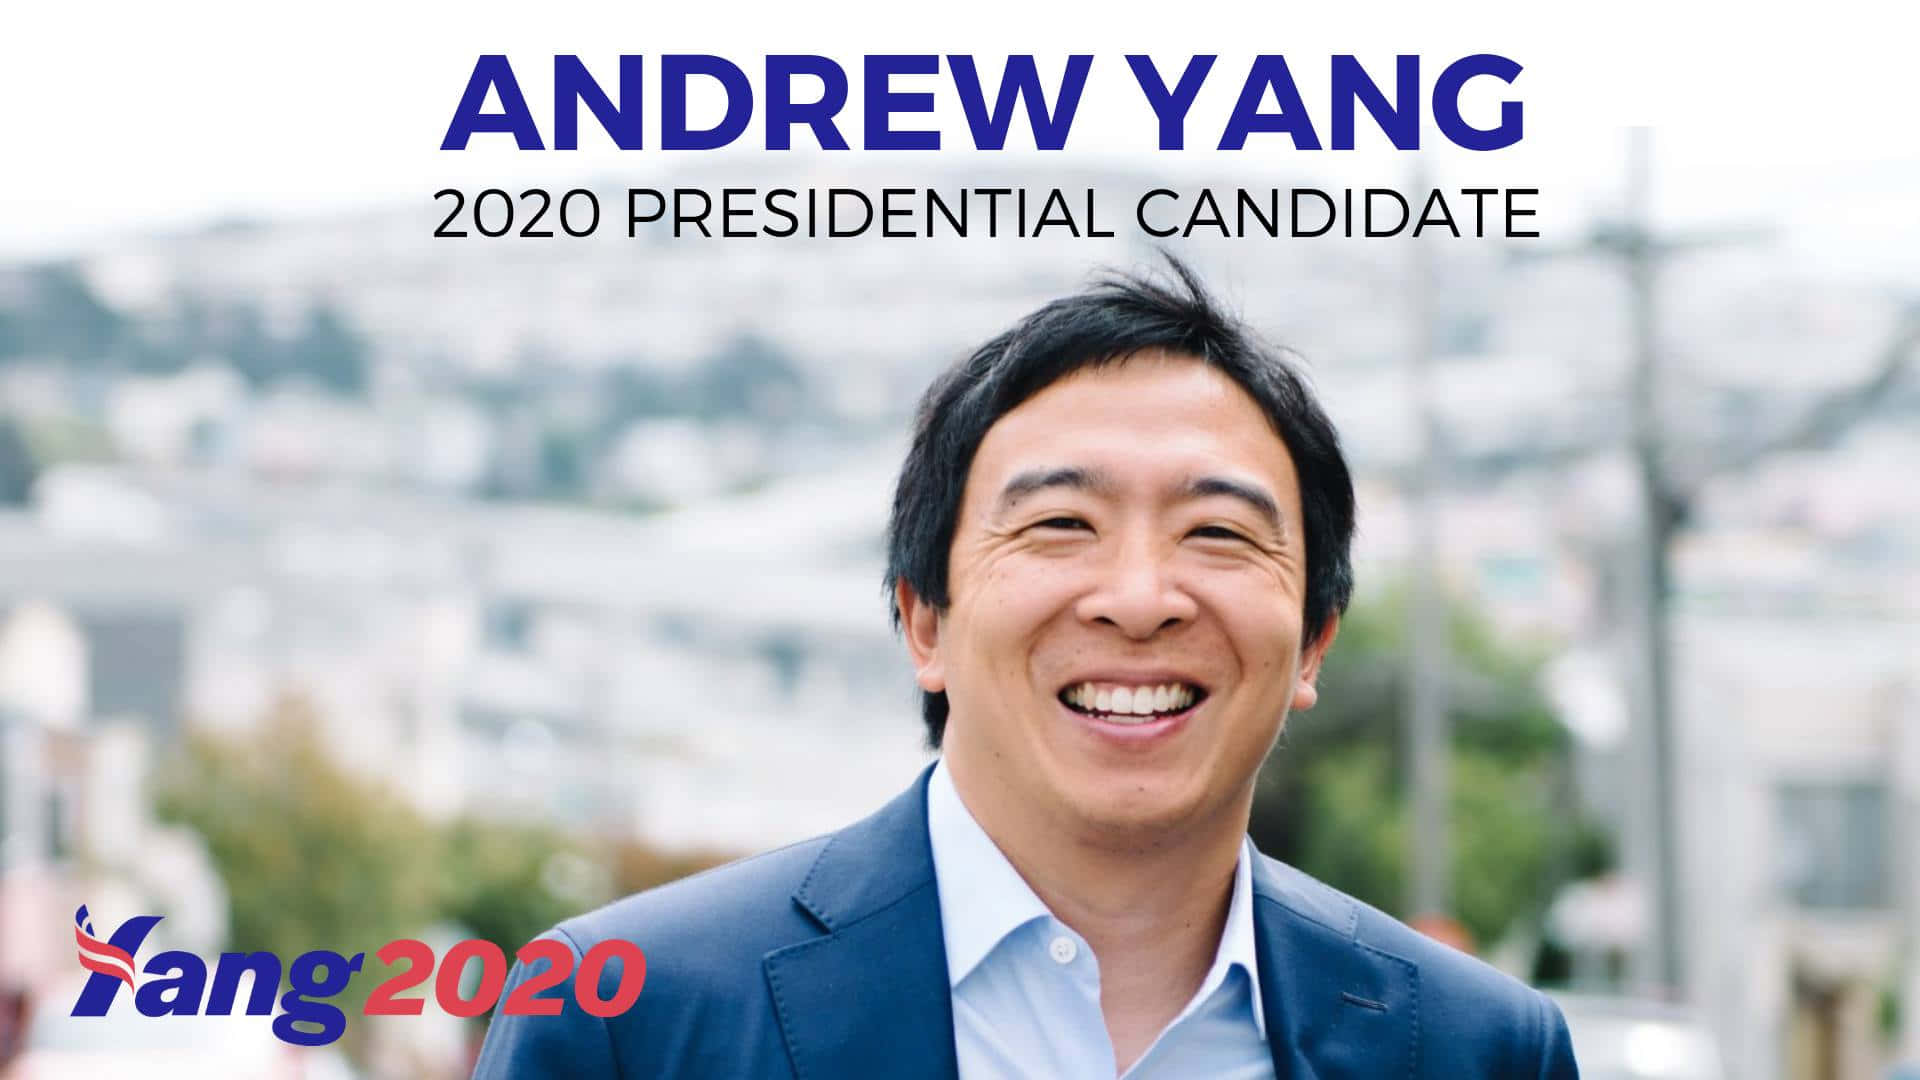 Andrew Yang For President 2020 Wallpaper